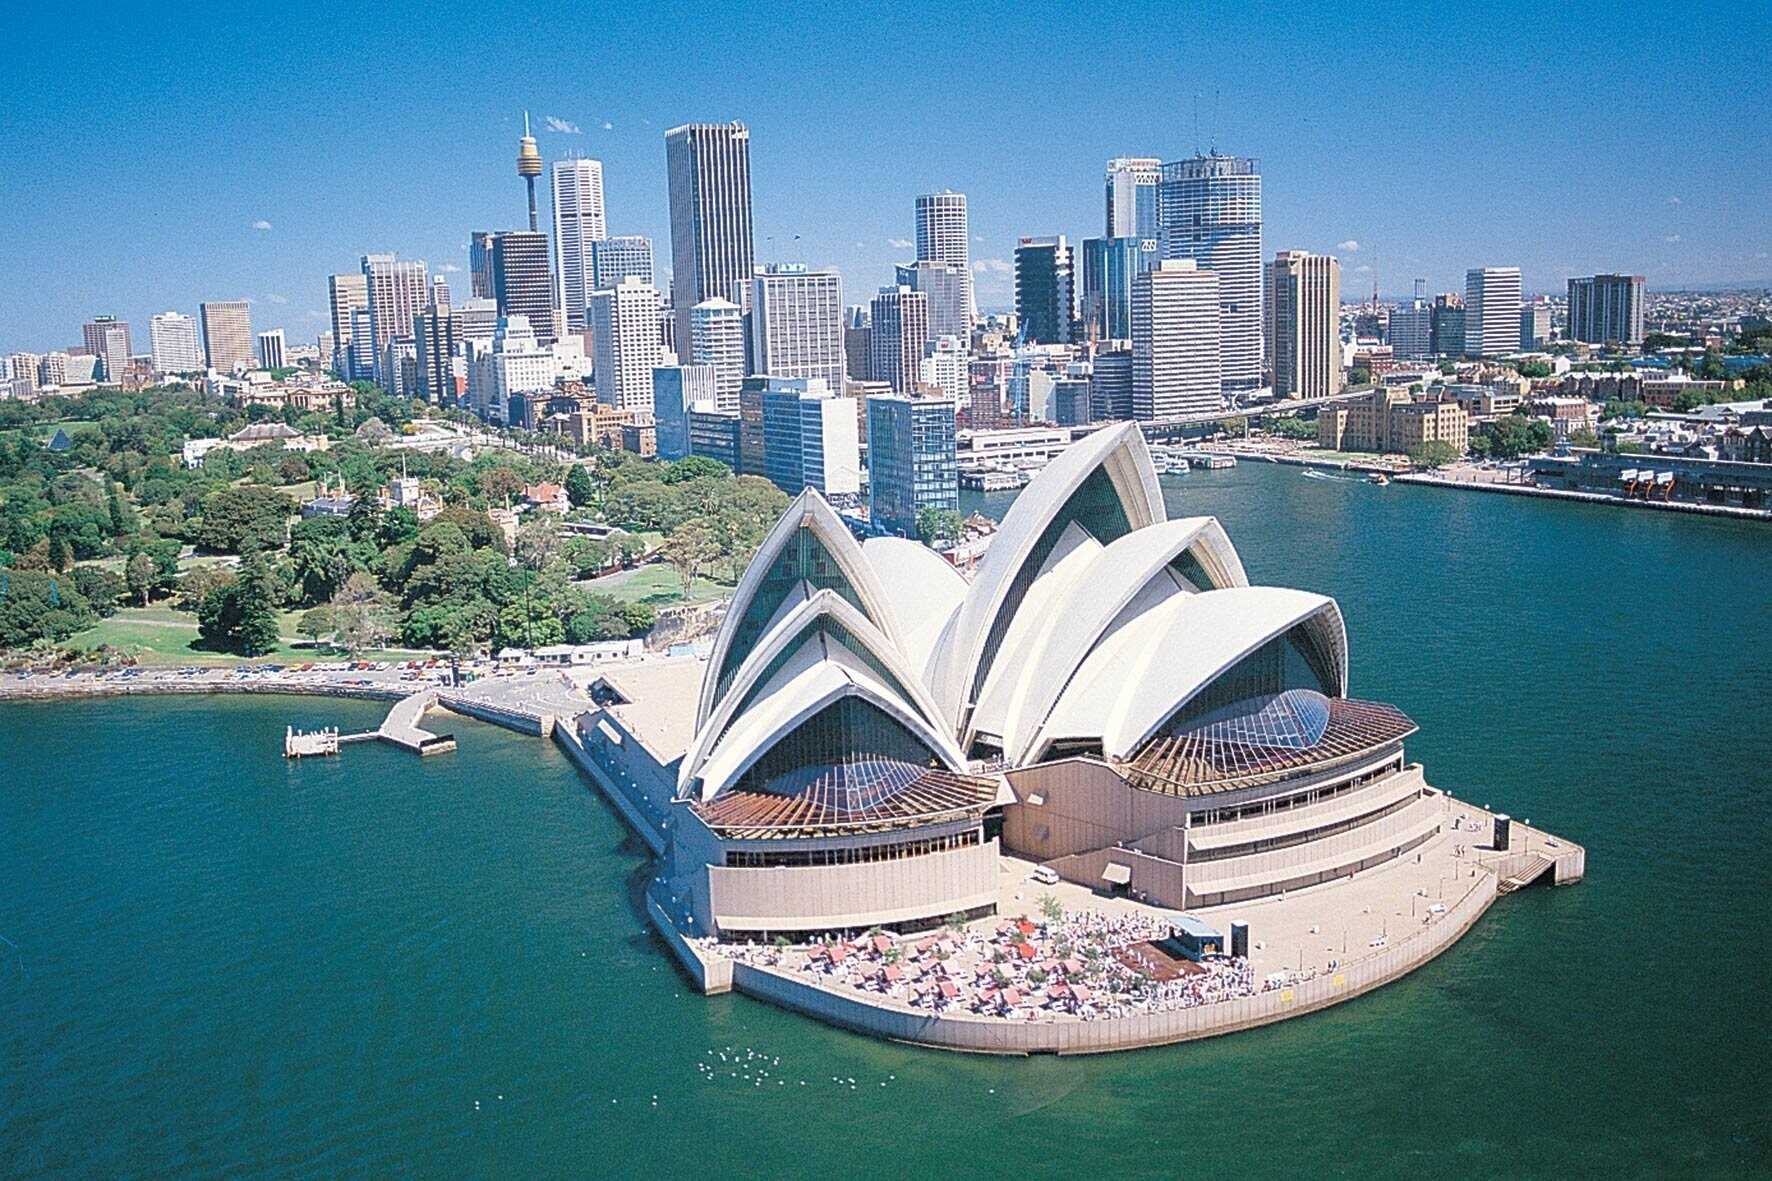 Du lịch Úc - Sydney - Melbourne mùa Thu 7 ngày 6 đêm từ Sài Gòn giá tốt